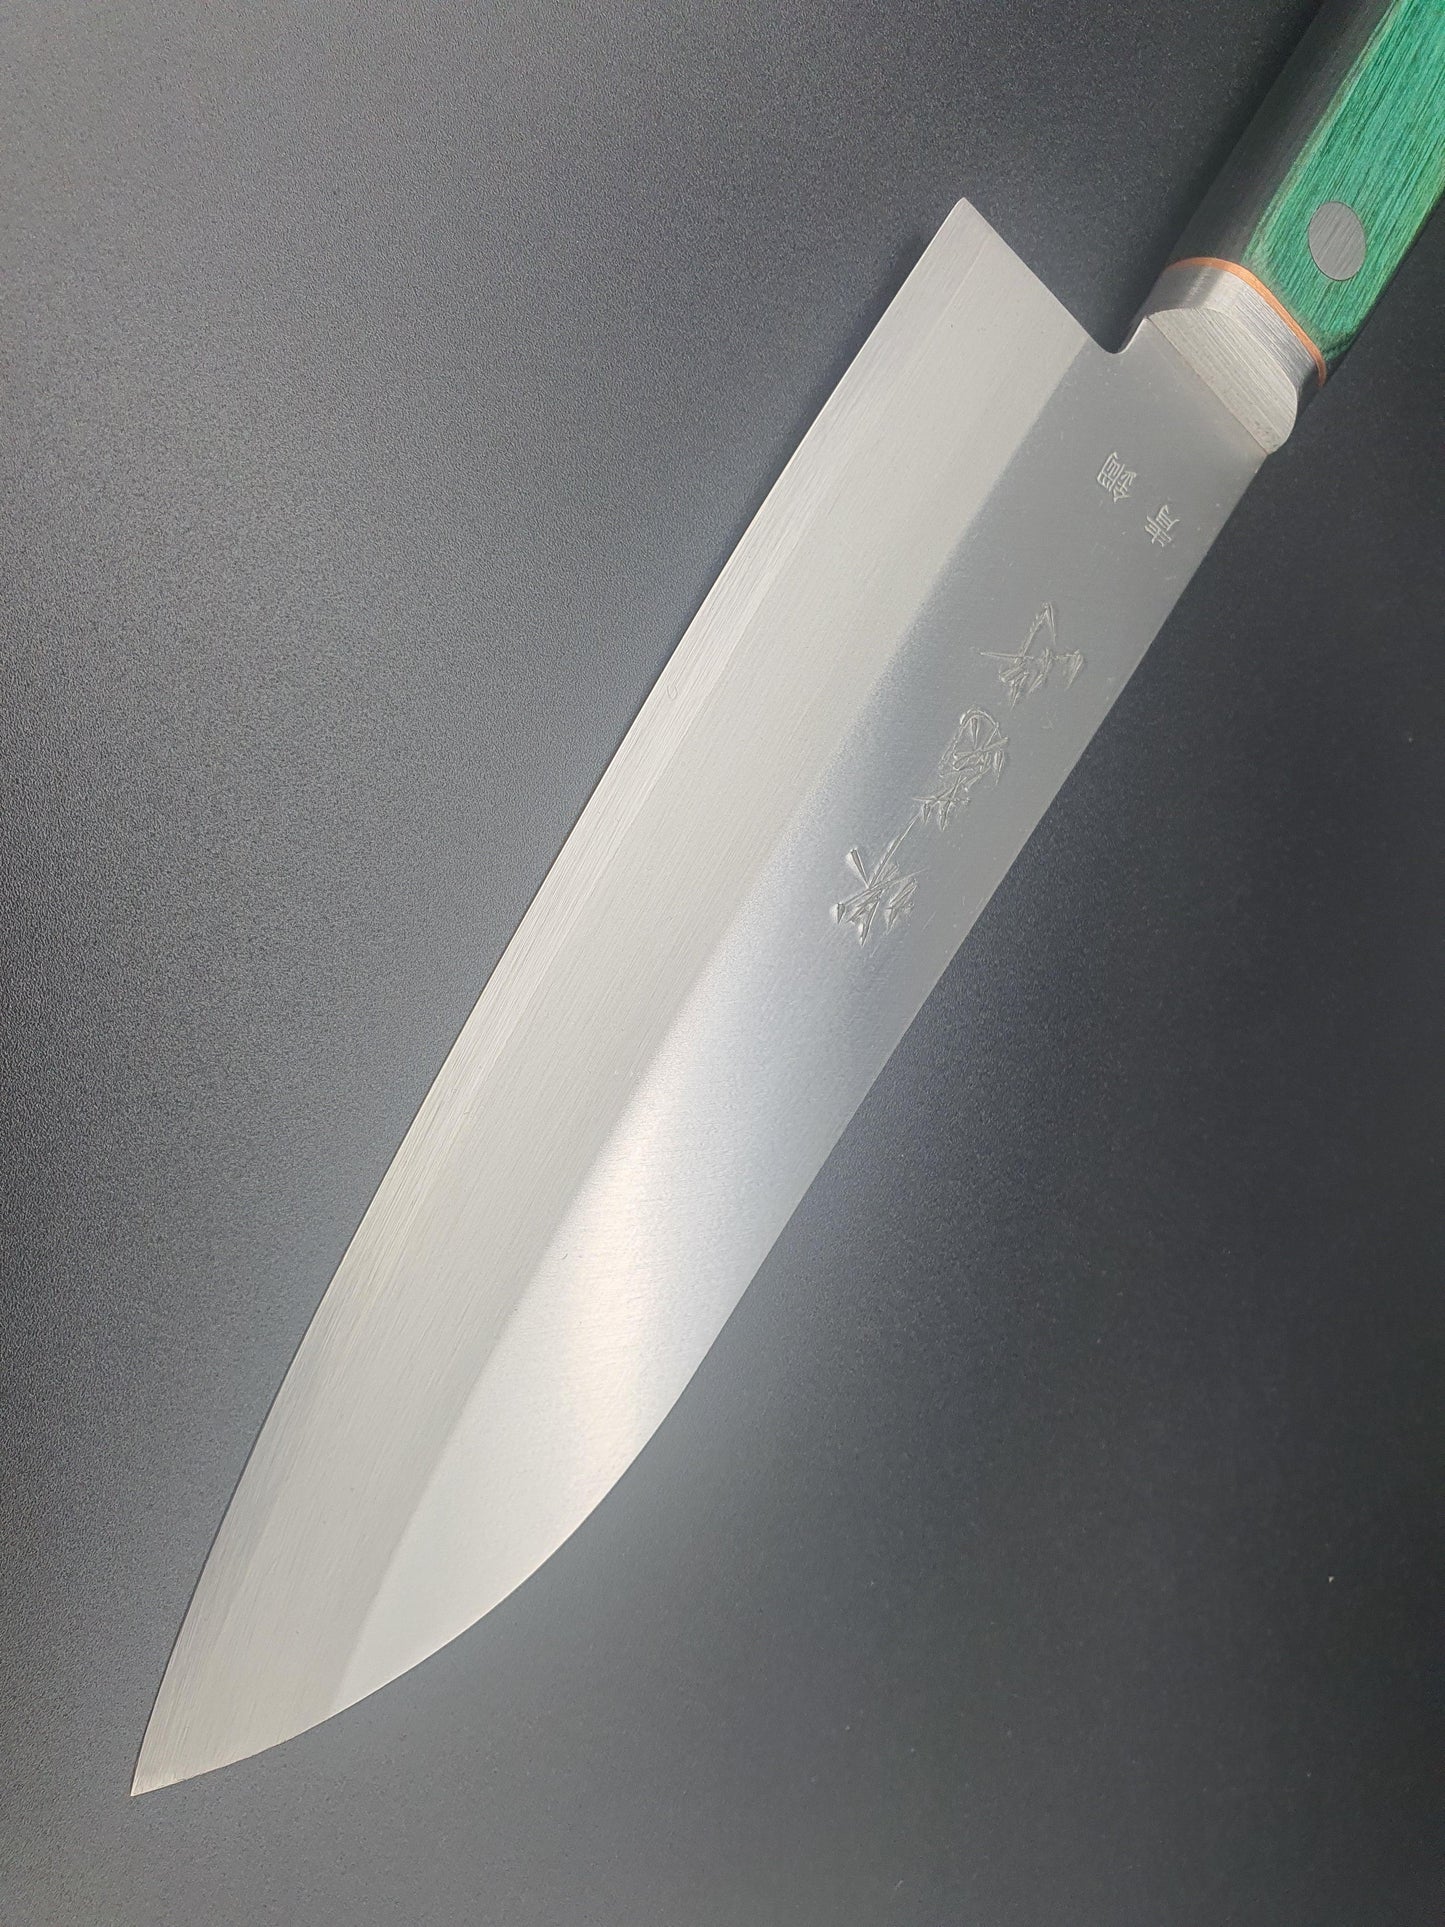 Sakai Kikumori Blue 1 Migaki 140mm Santoku - The Sharp Chef